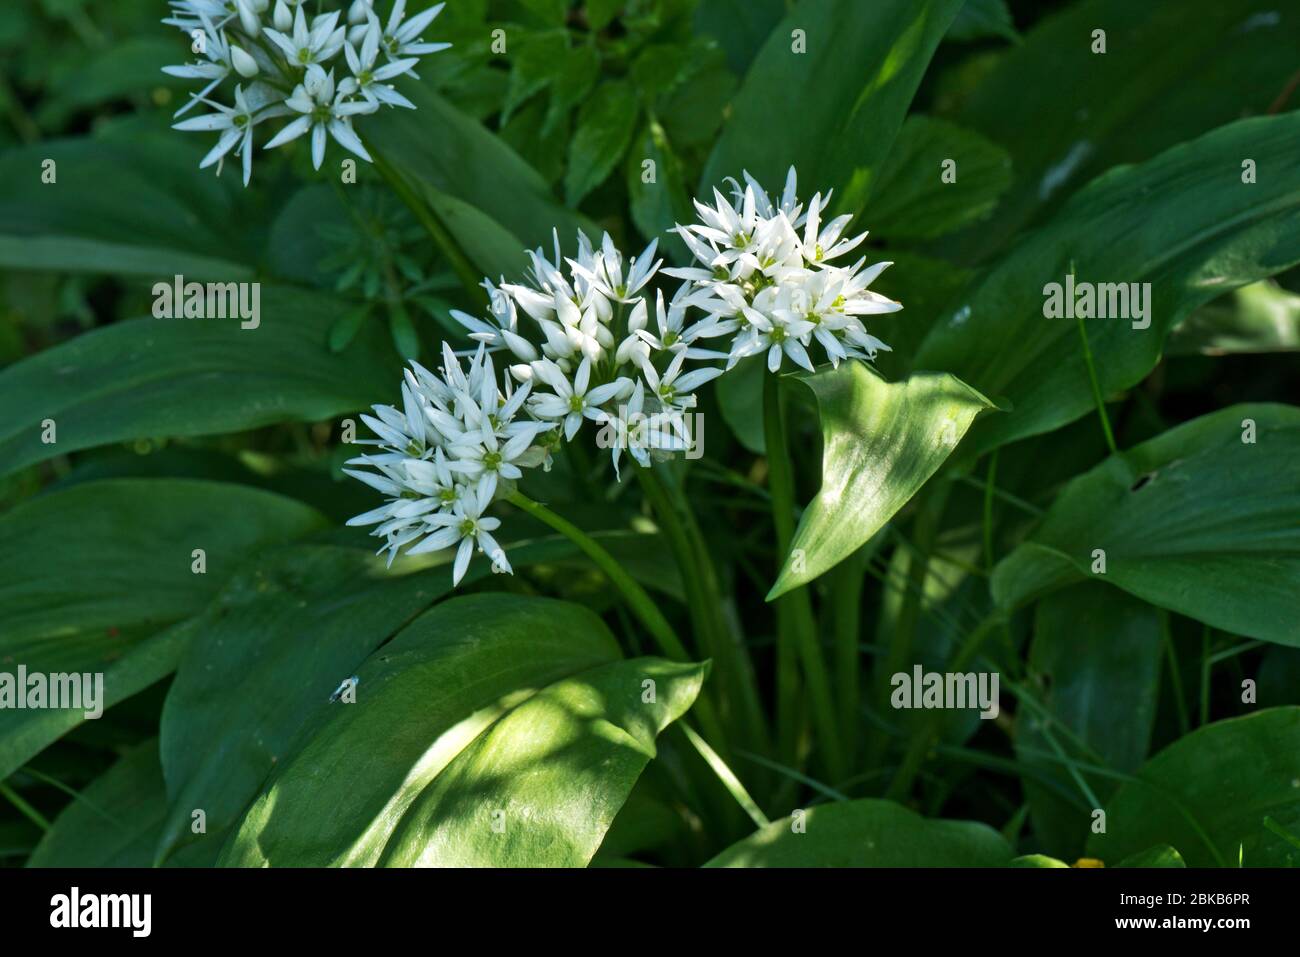 Bärlauch oder Ramsons (Allium ursinum) weiße Blüten einer Waldpflanze mit essbaren Blättern in der Küche verwendet, Berkshire, April Stockfoto